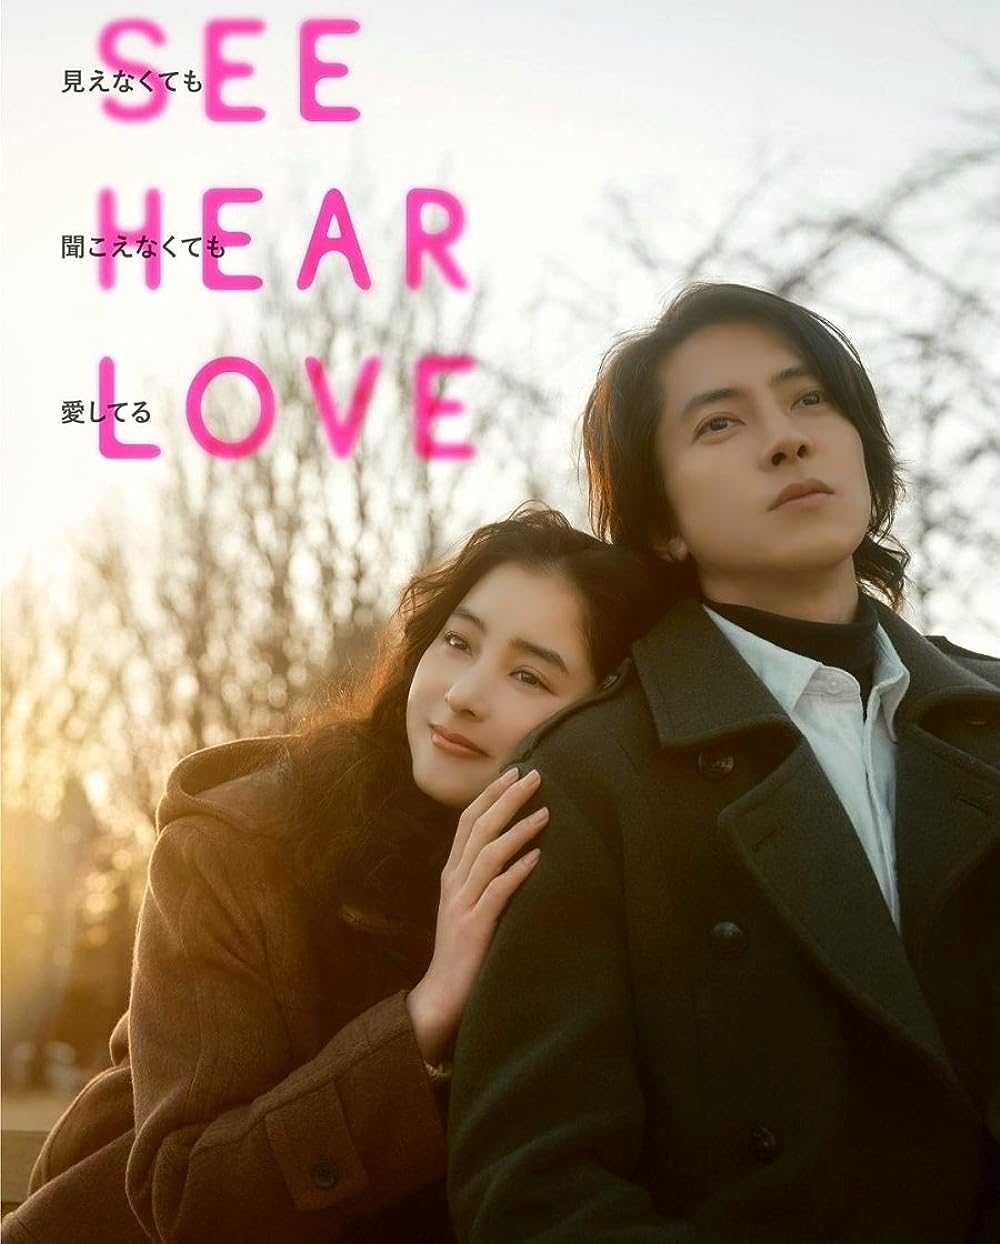 See Hear Love (2023) แม้จะมองไม่เห็น แม้จะไม่ได้ยิน แต่ก็รักเธอสุดหัวใจ